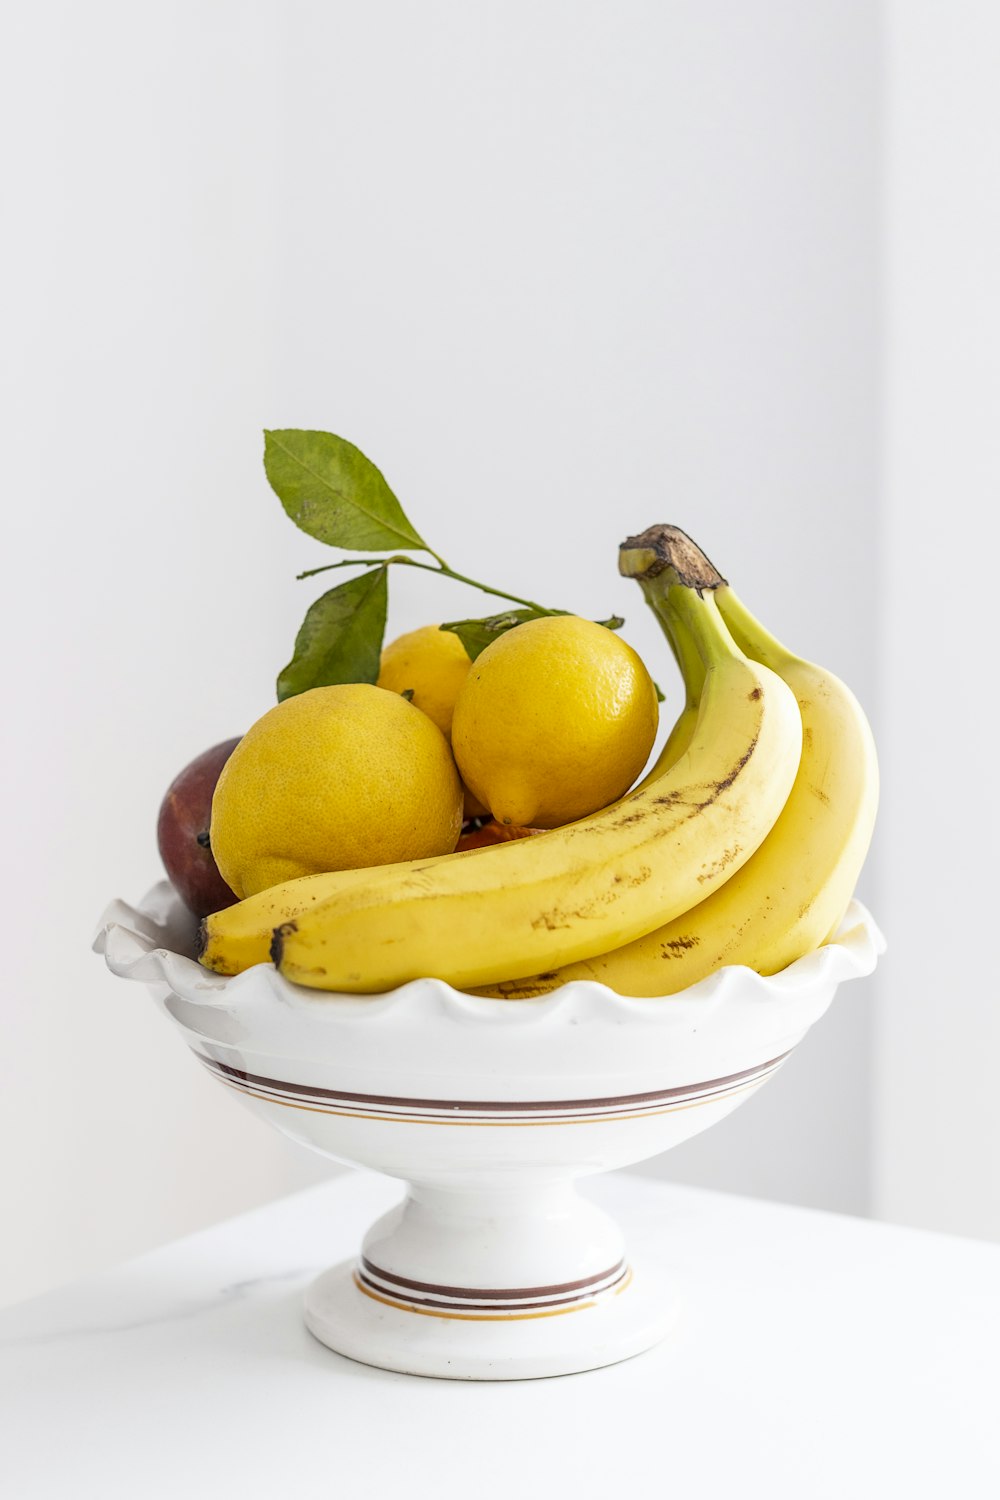 yellow banana fruit on white ceramic bowl